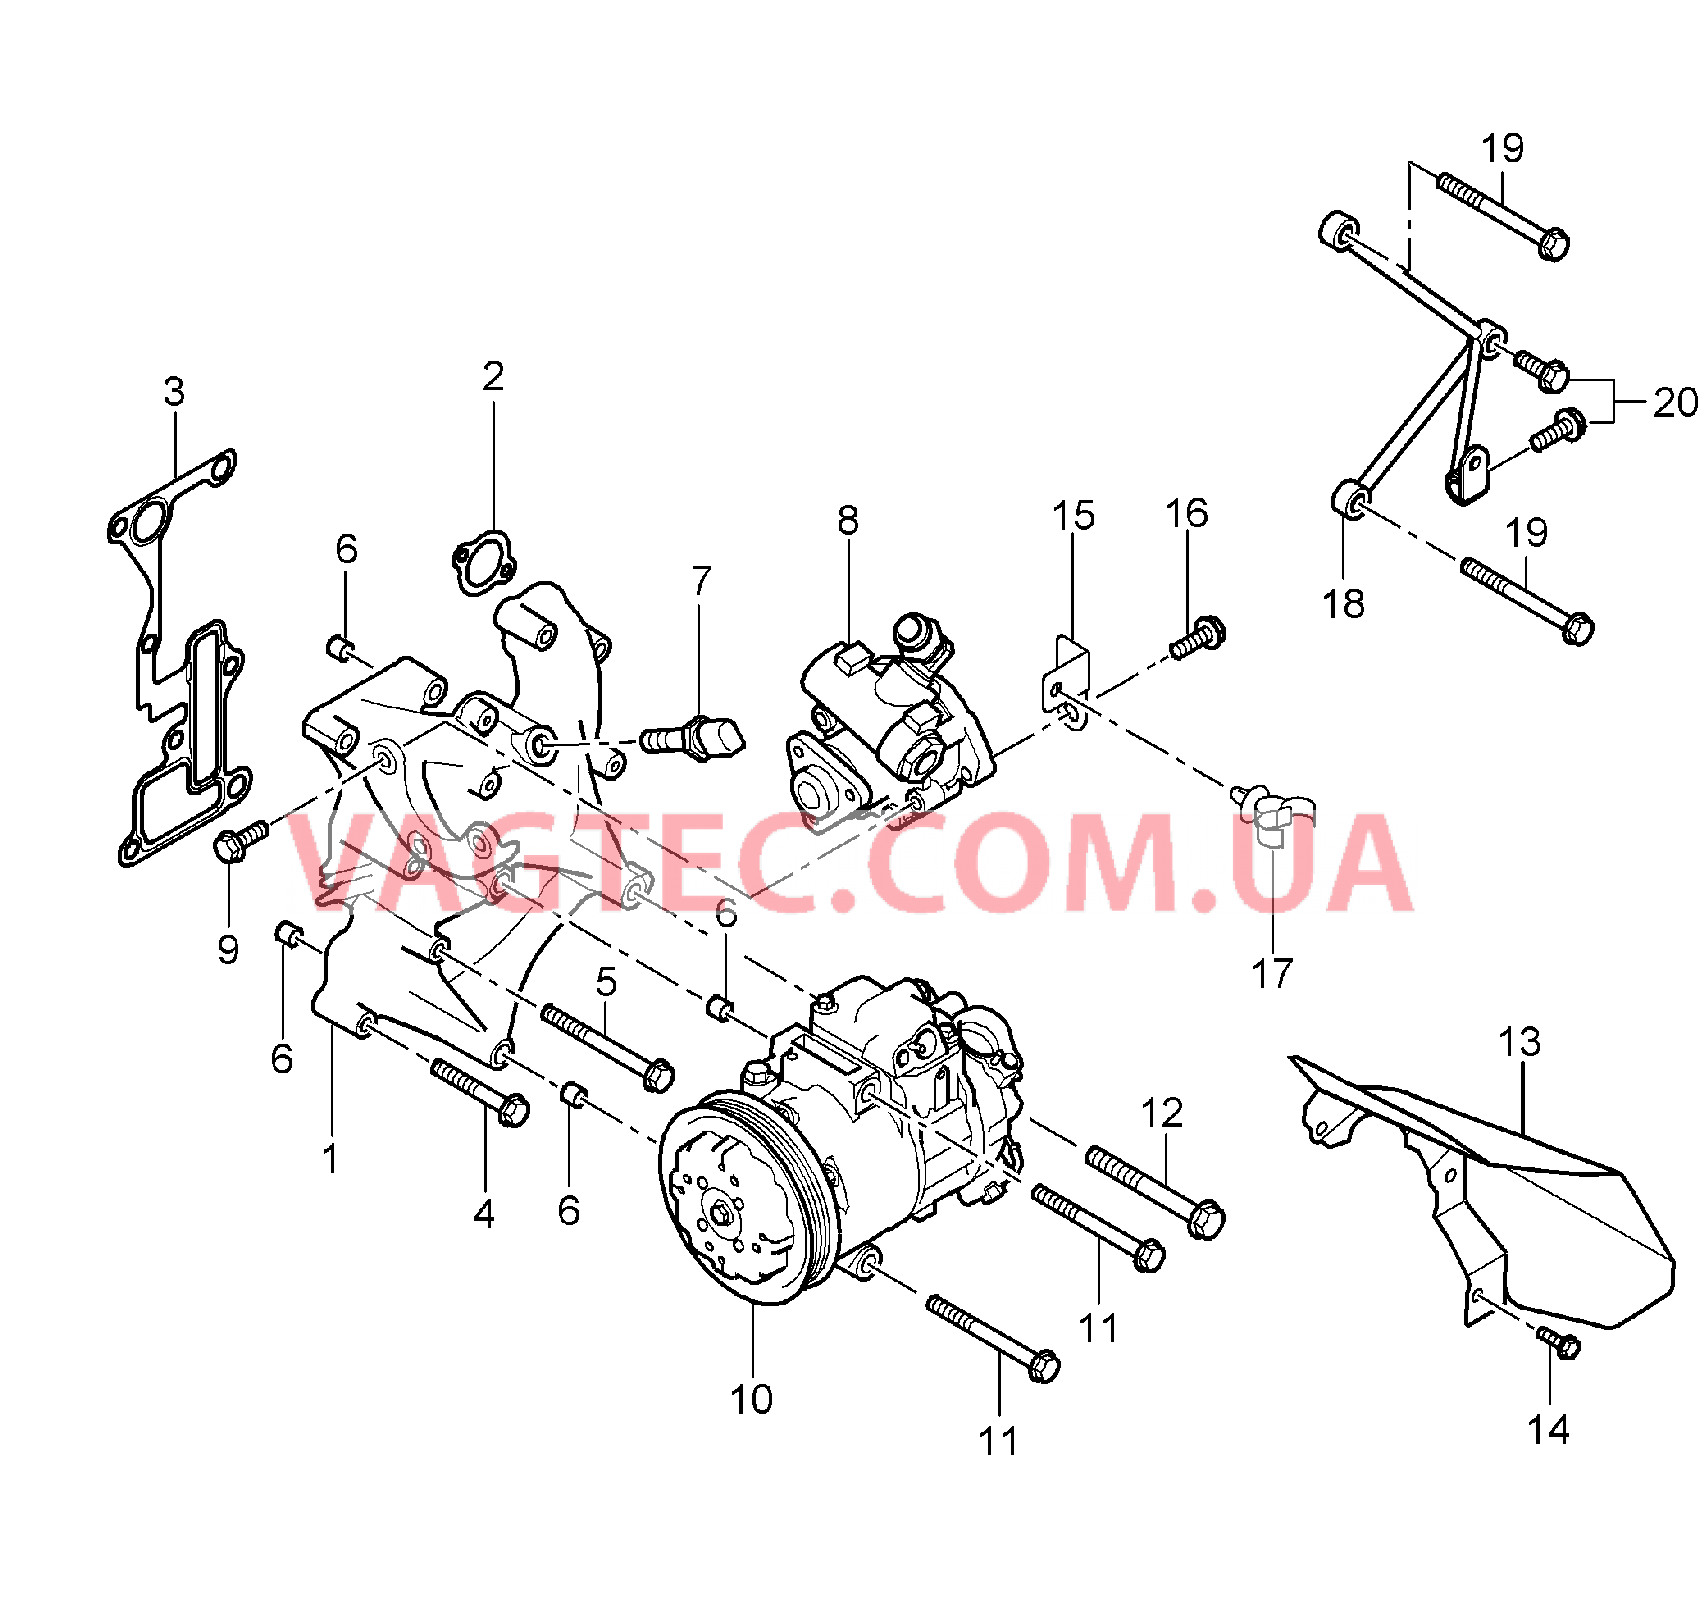 104-015 Консоль, Сервонасос, Компрессор, Кондиционер
						
						M80.01 для PORSCHE CarreraGT 2004-2006-USA